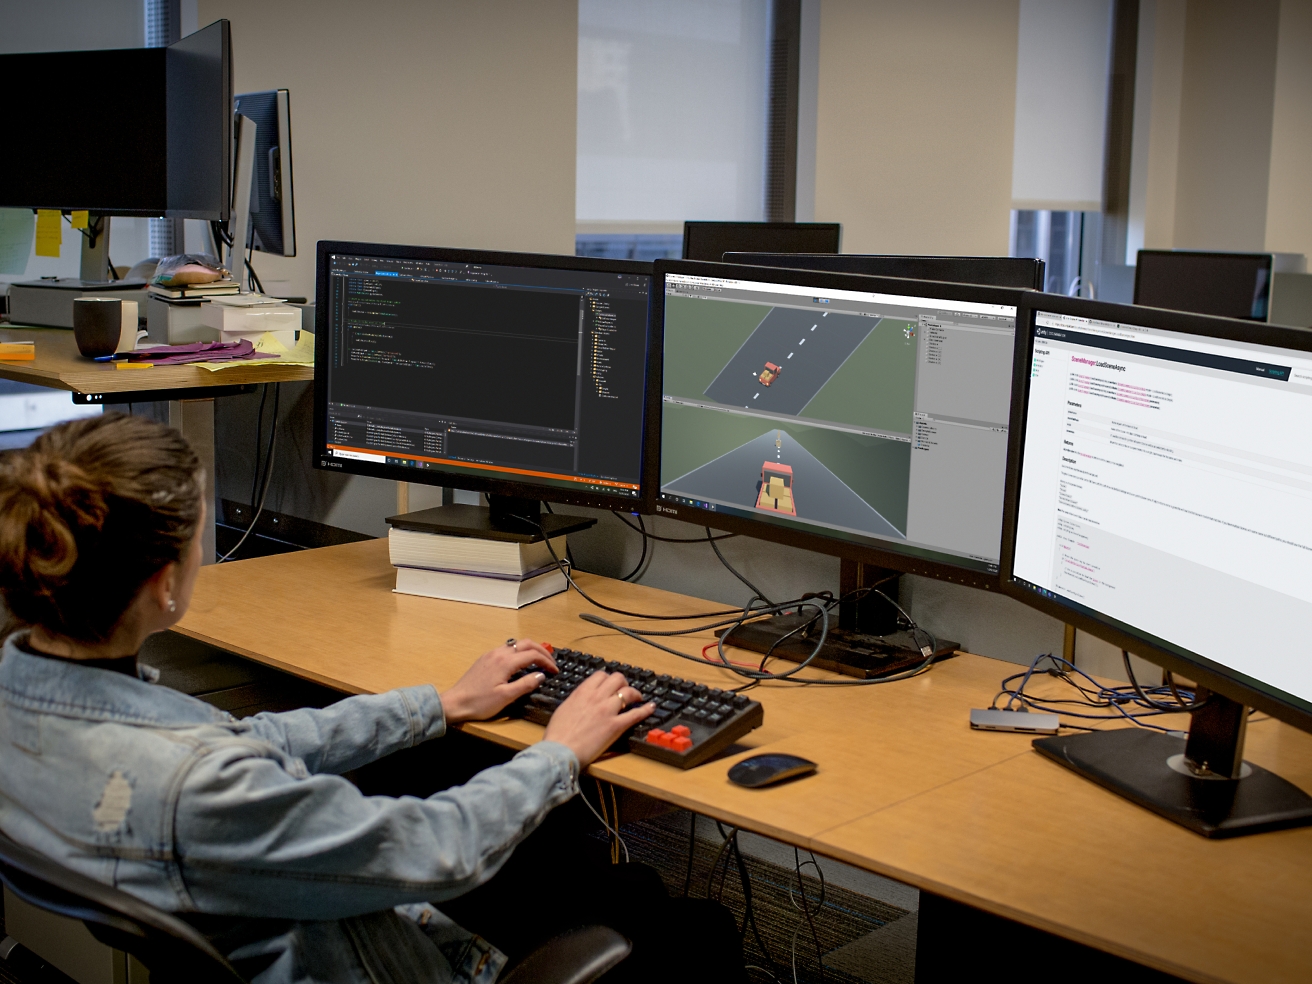 Una desarrolladora de software trabaja en una oficina con varios monitores, codificando y depurando software.